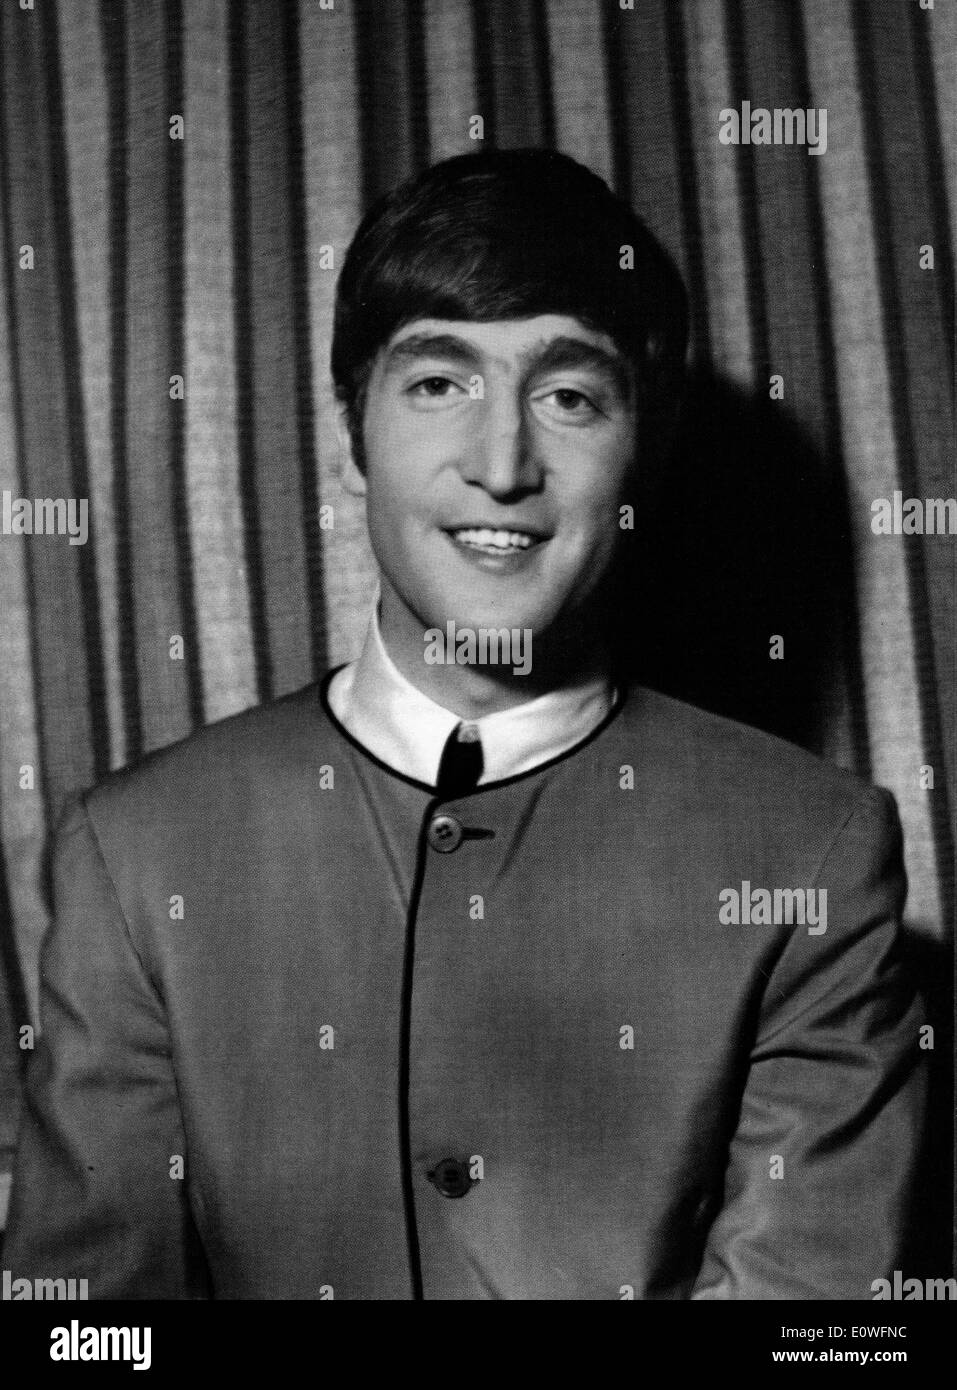 The Beatles singer John Lennon Stock Photo